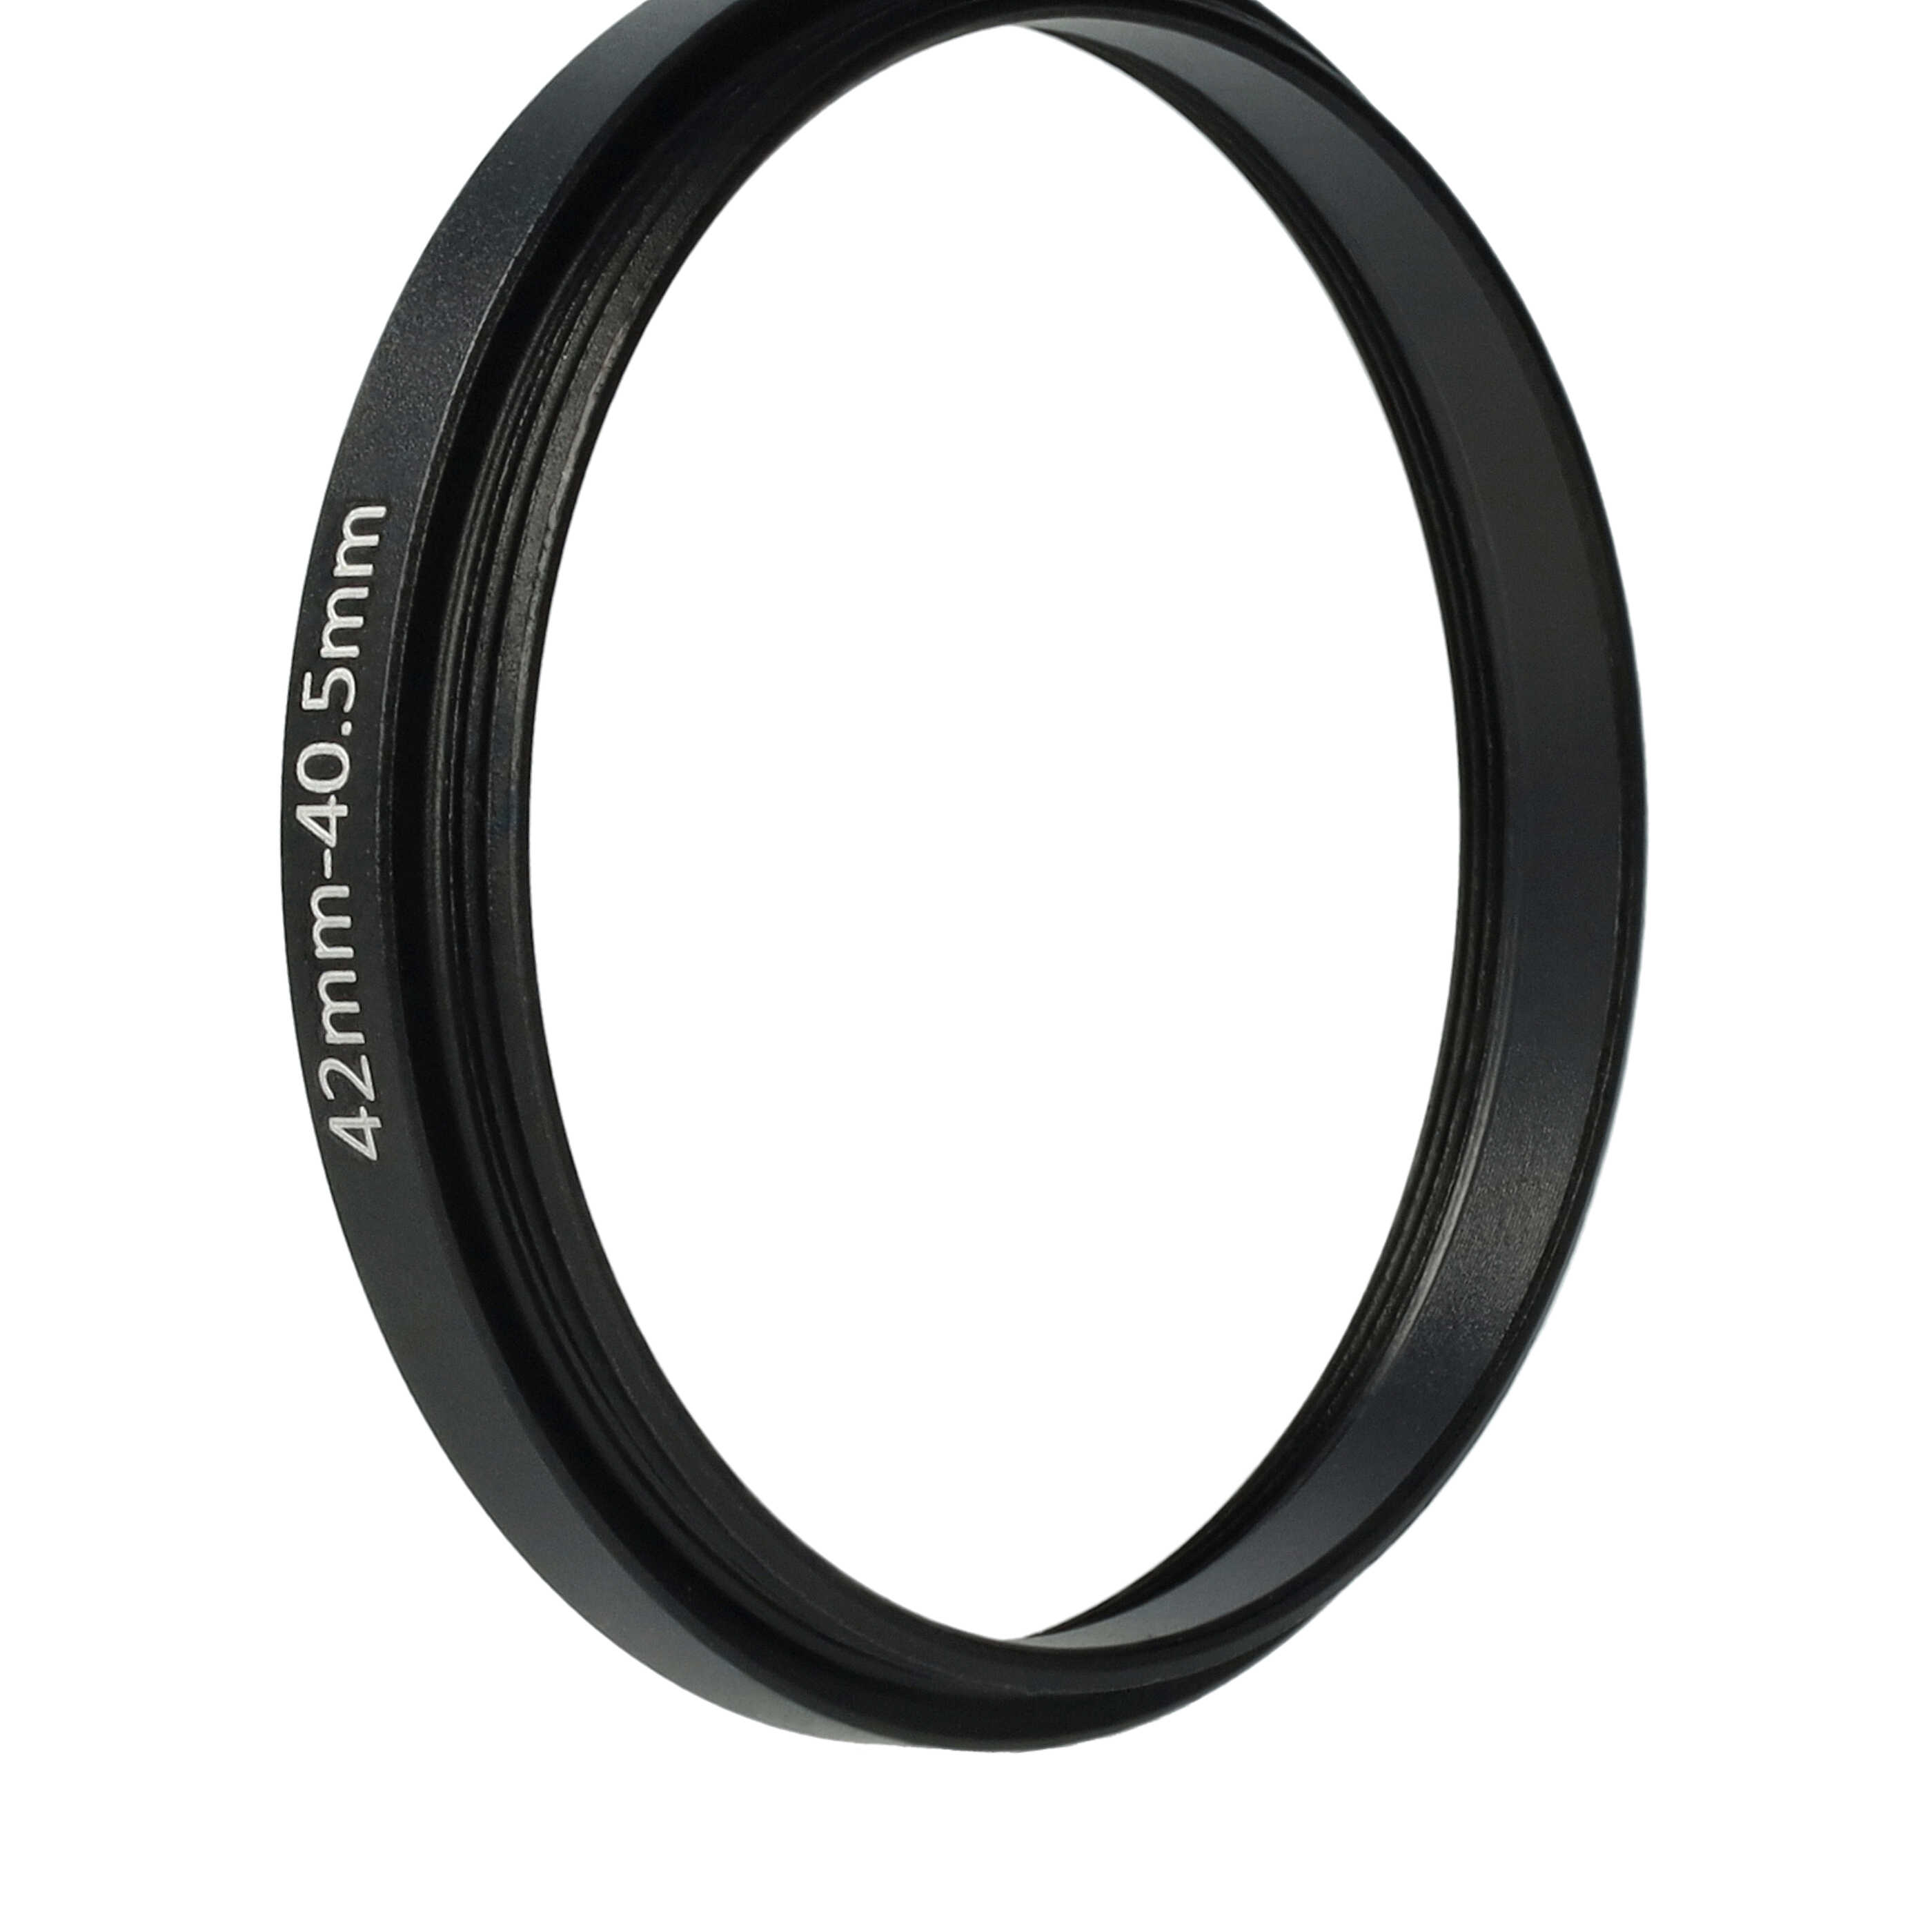 Anillo adaptador Step Down de 42 mm a 40,5 mm para objetivo de la cámara - Adaptador de filtro, metal, negro